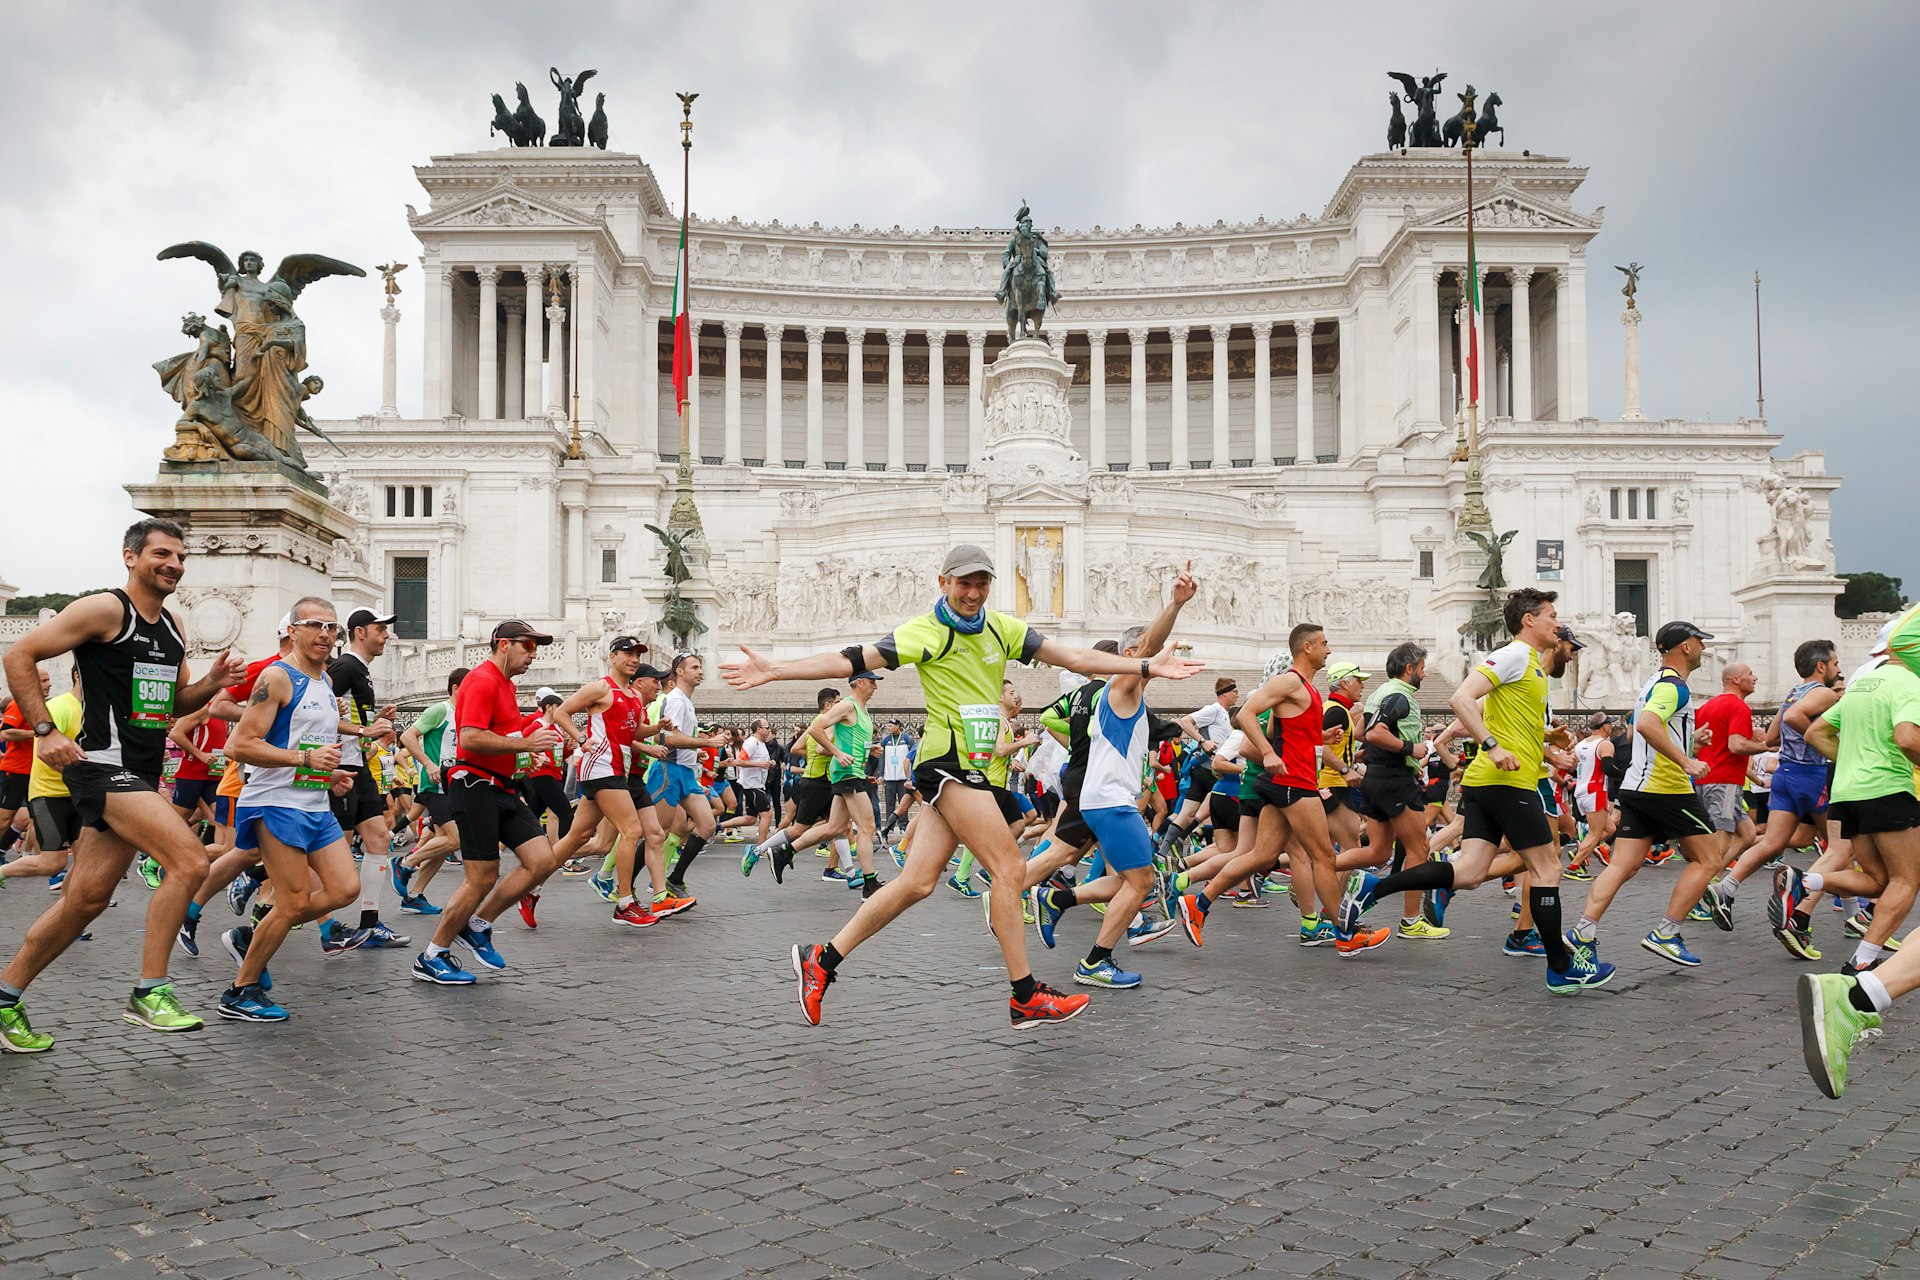 Runners run in the Rome marathon